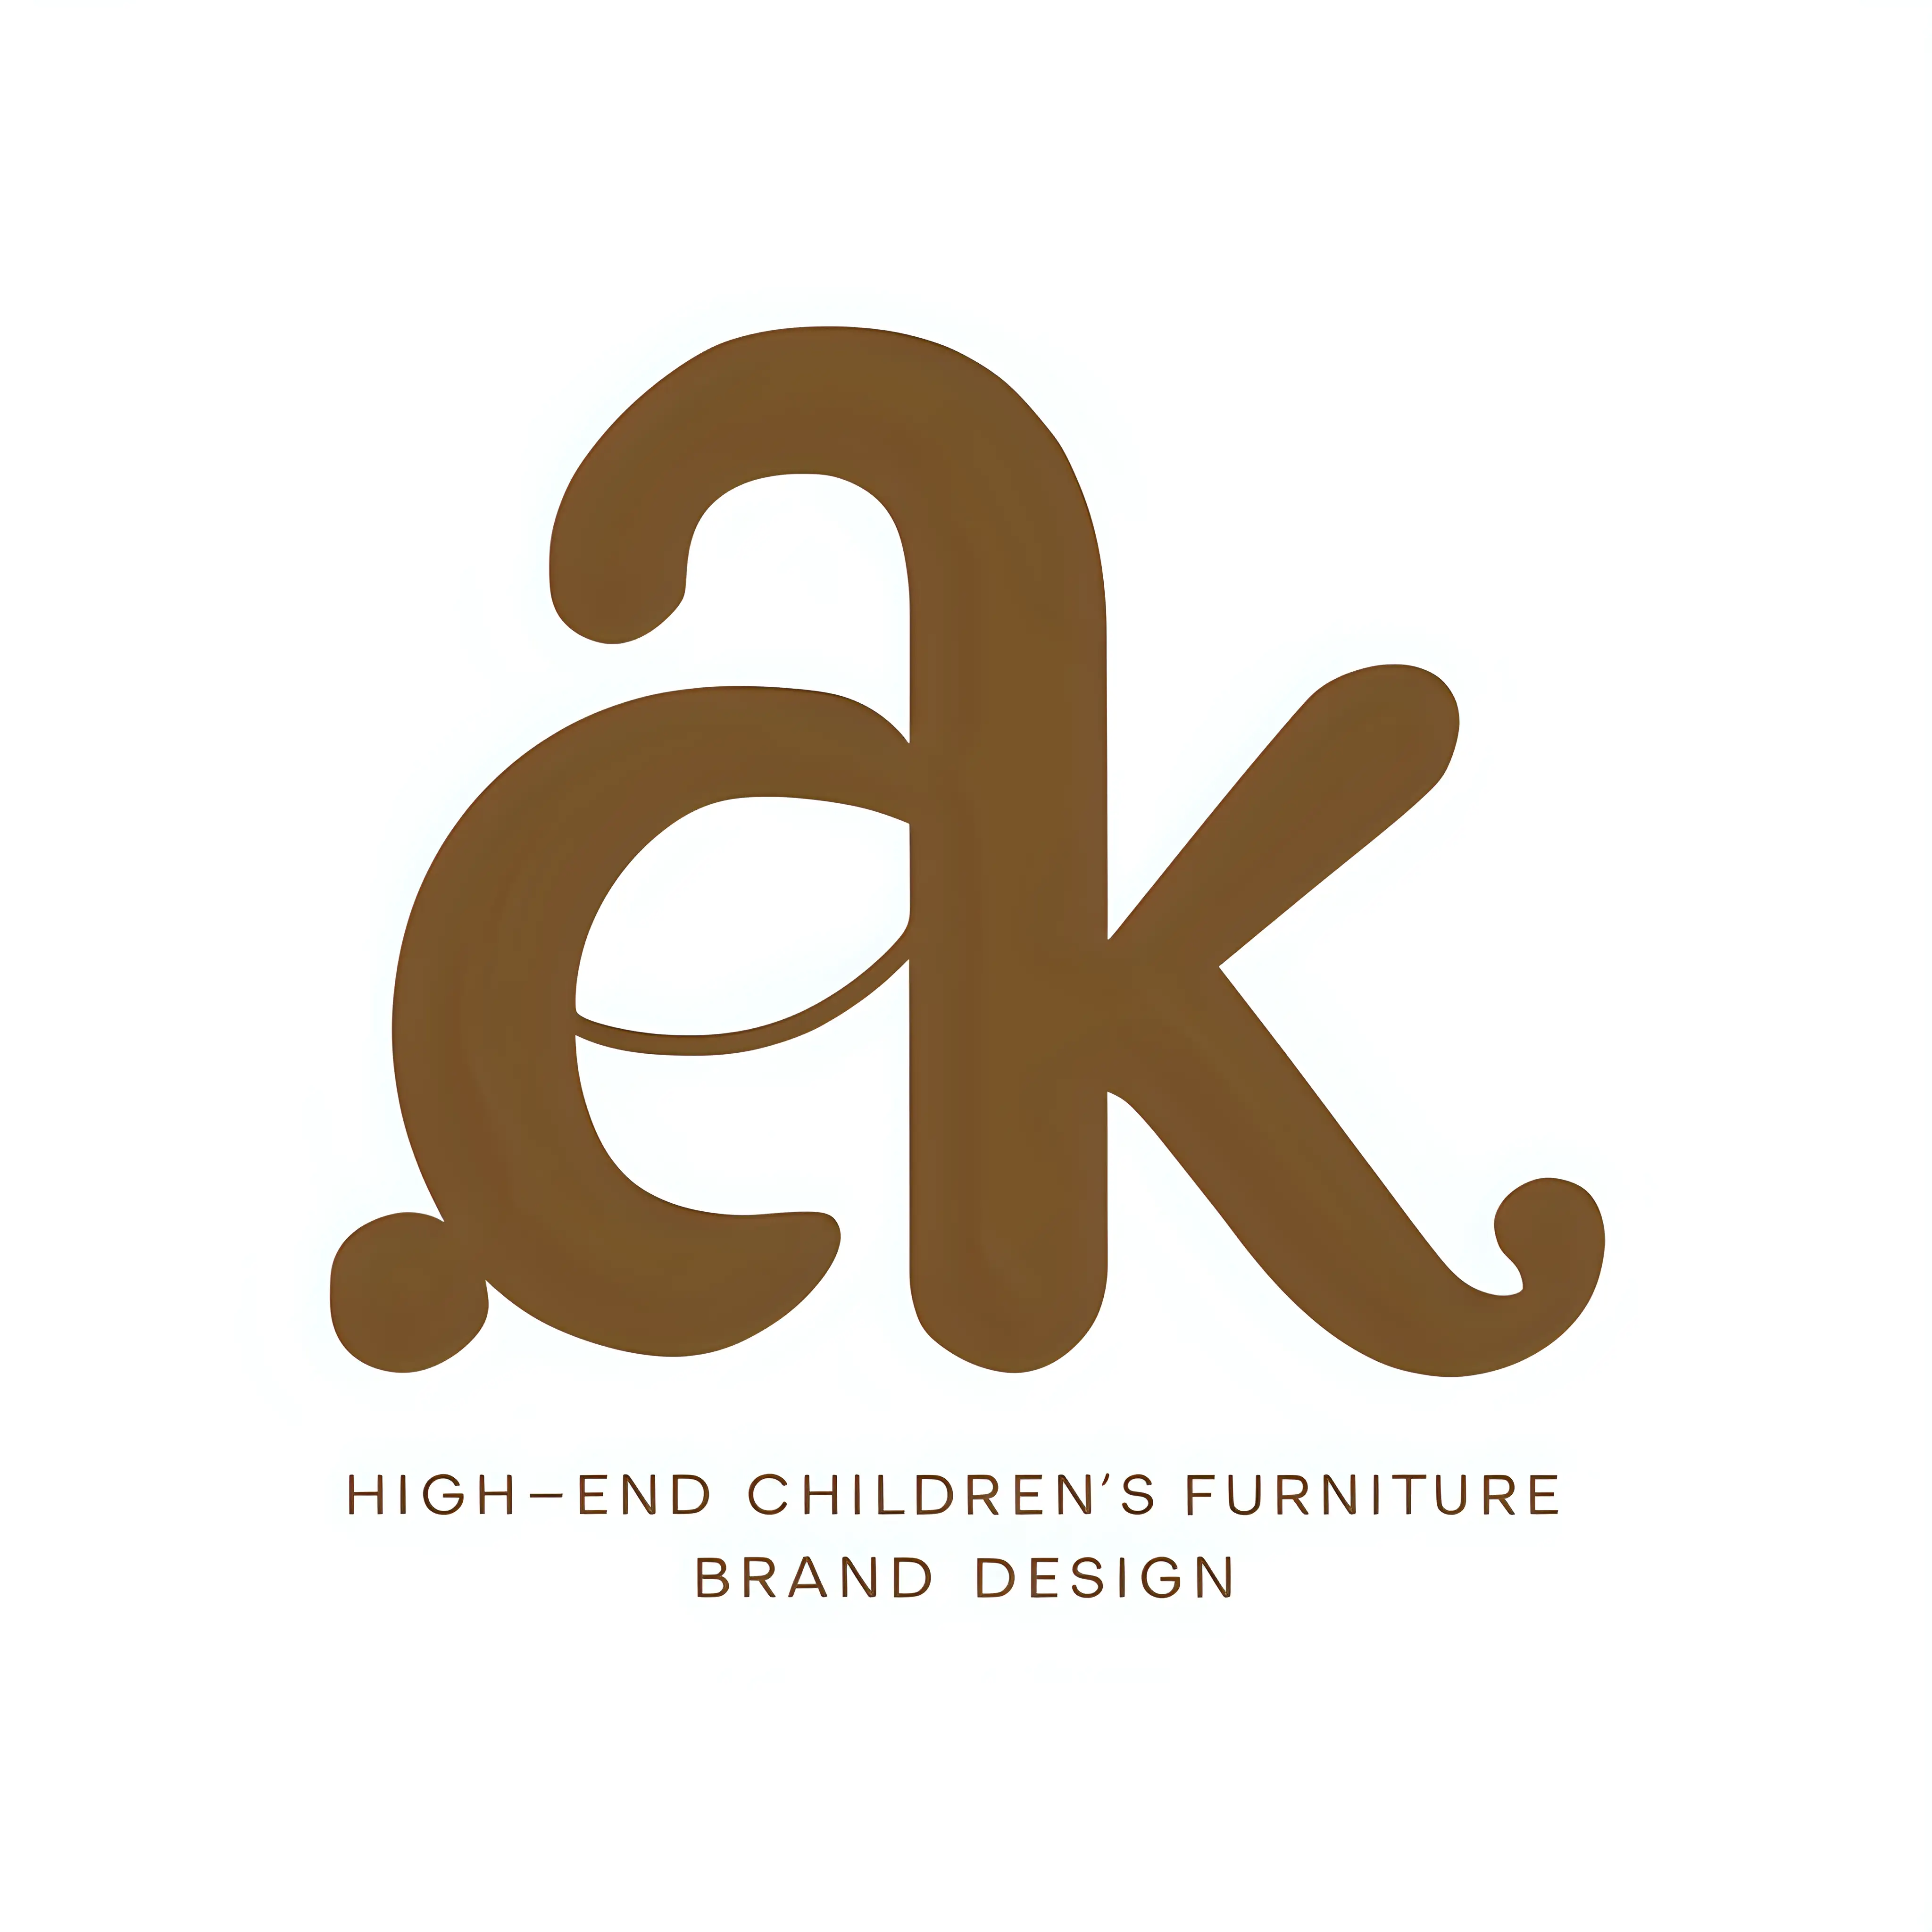 用字母a和k两个字母，为高端儿童家具品牌设计一个logo，设计要求圆润感，并且略微带点童趣